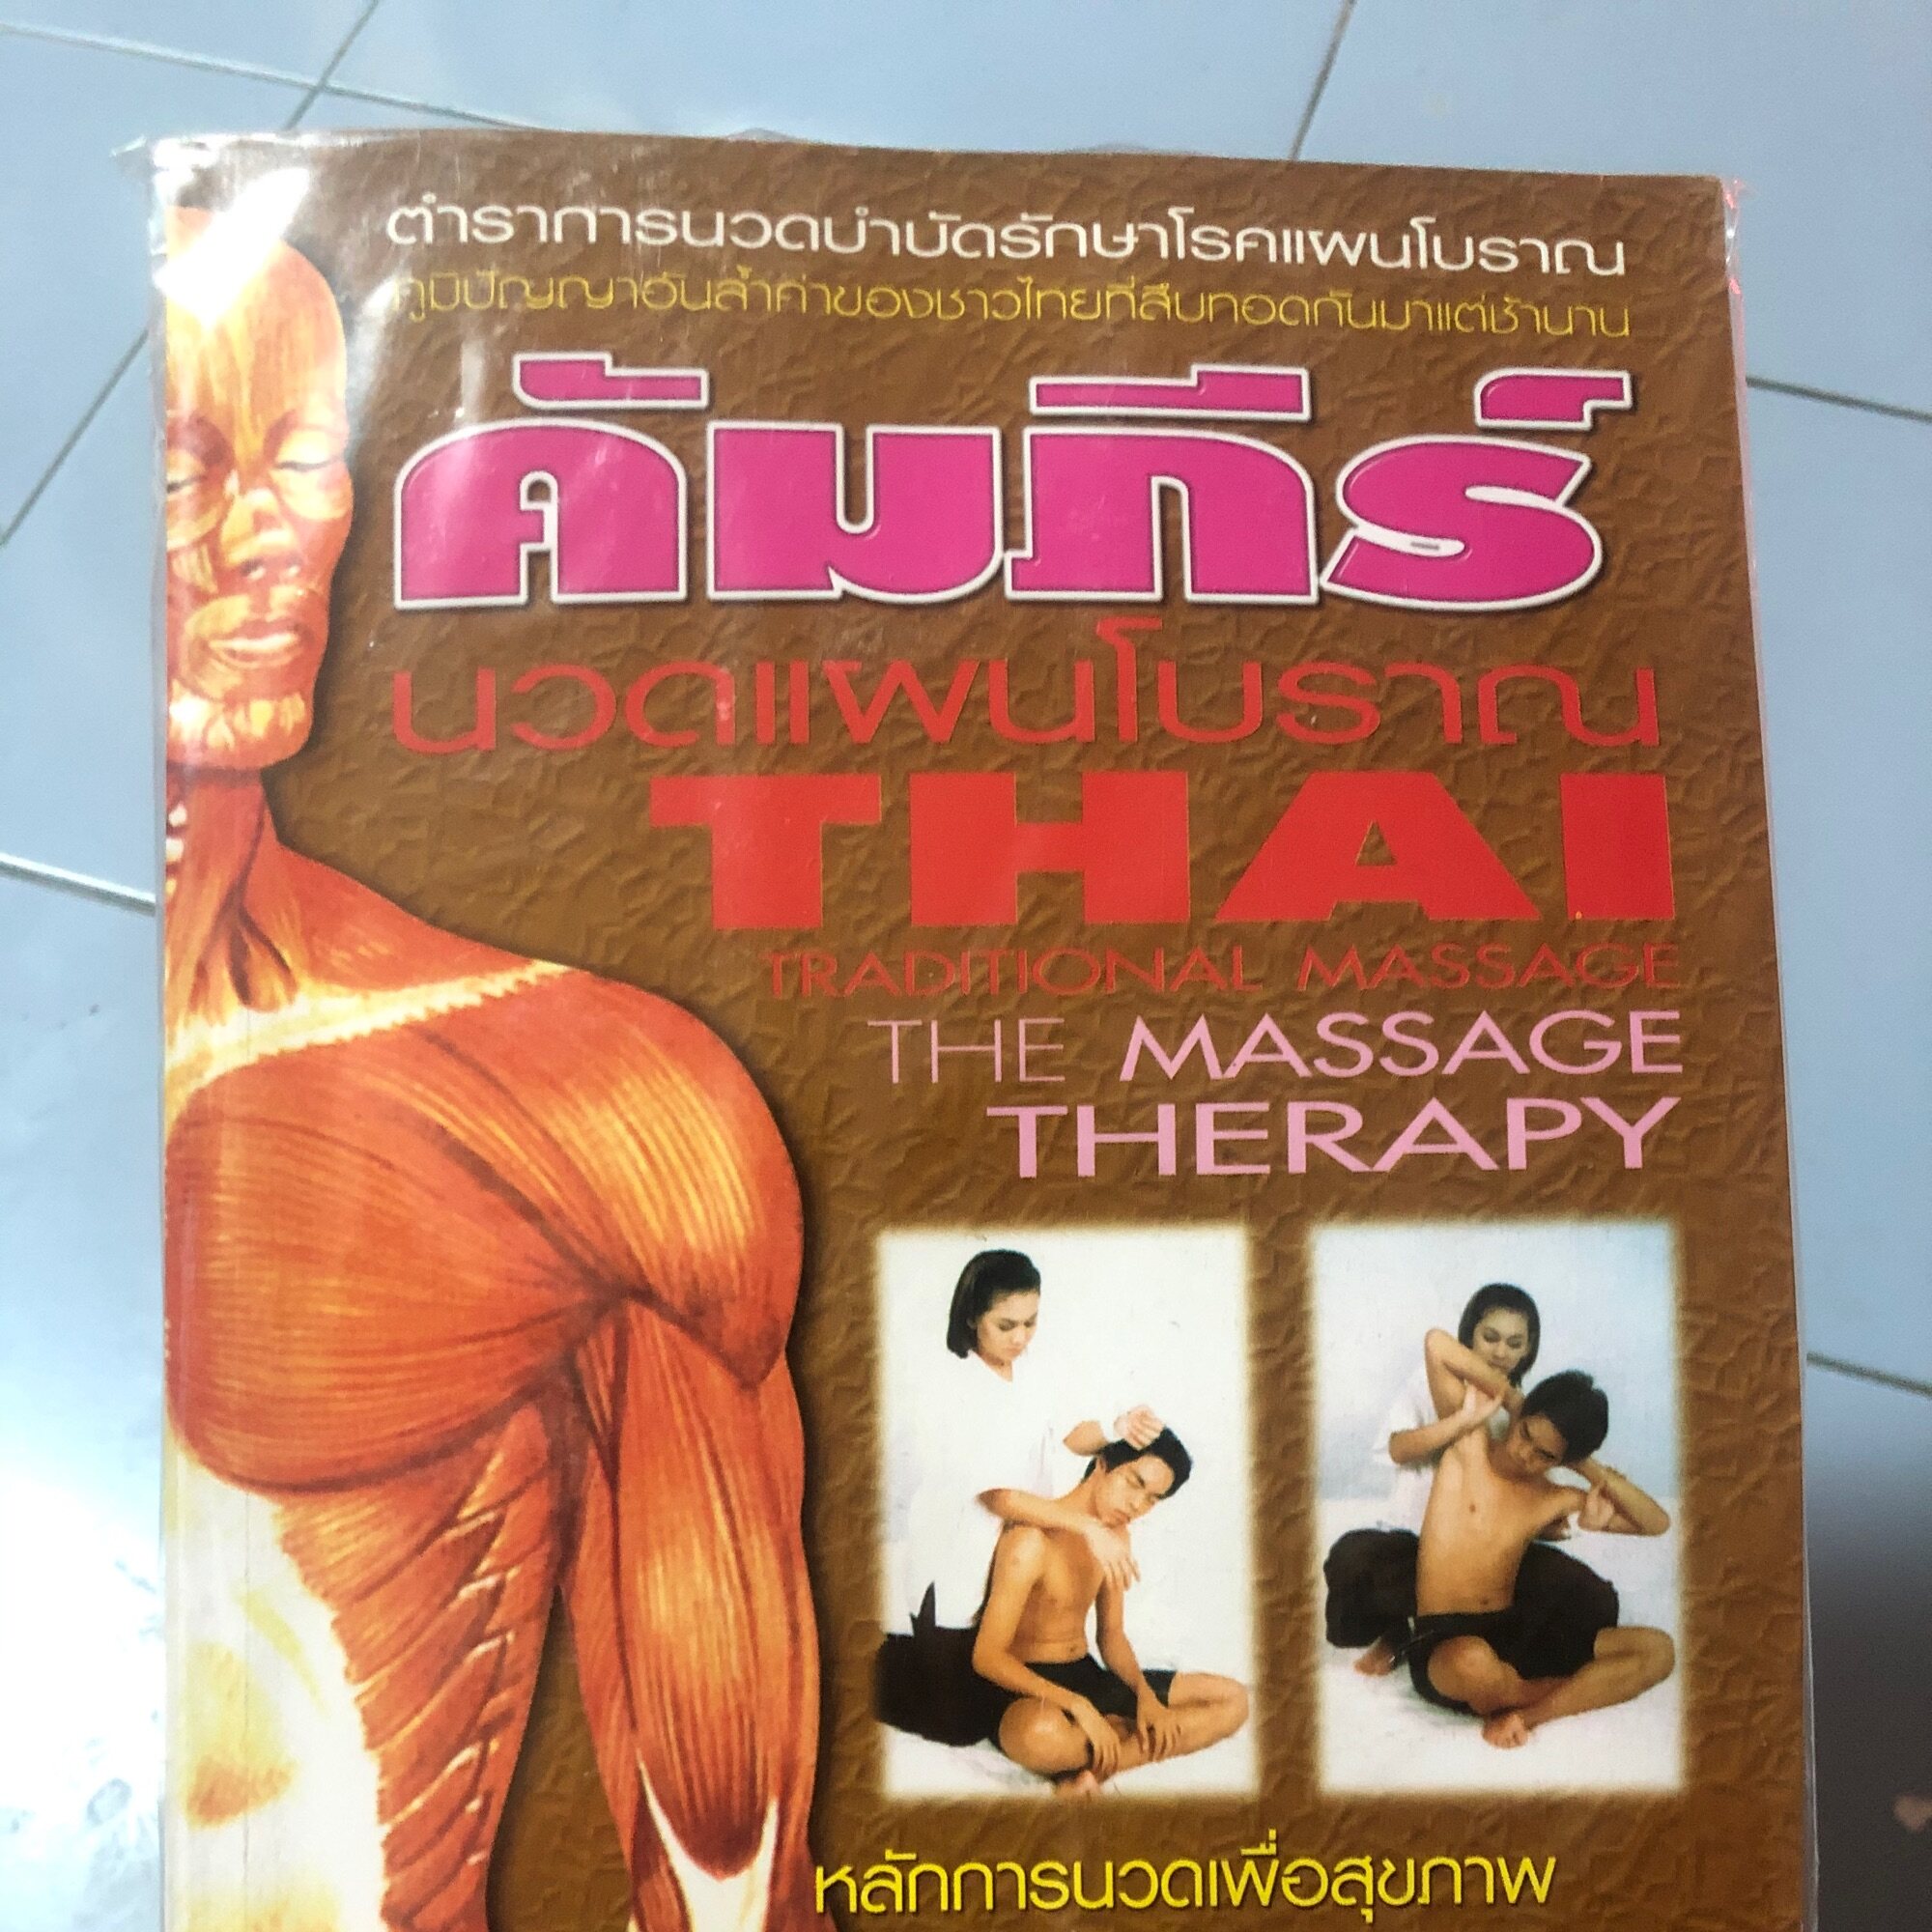 หนังสือ คัมภีร์ นวดแผนโบราณ THAI TRADITIONAL MASSAGE THE MASSAGE THERAPY ตำราการนวดบำบัดรักษาโรคแผนโบราณ ภูมิปัญญาอันล้ำค่าของชาวไทยที่สืบทอดกันมาแต่ช้านาน หนังสือขนาดกระดาษA4